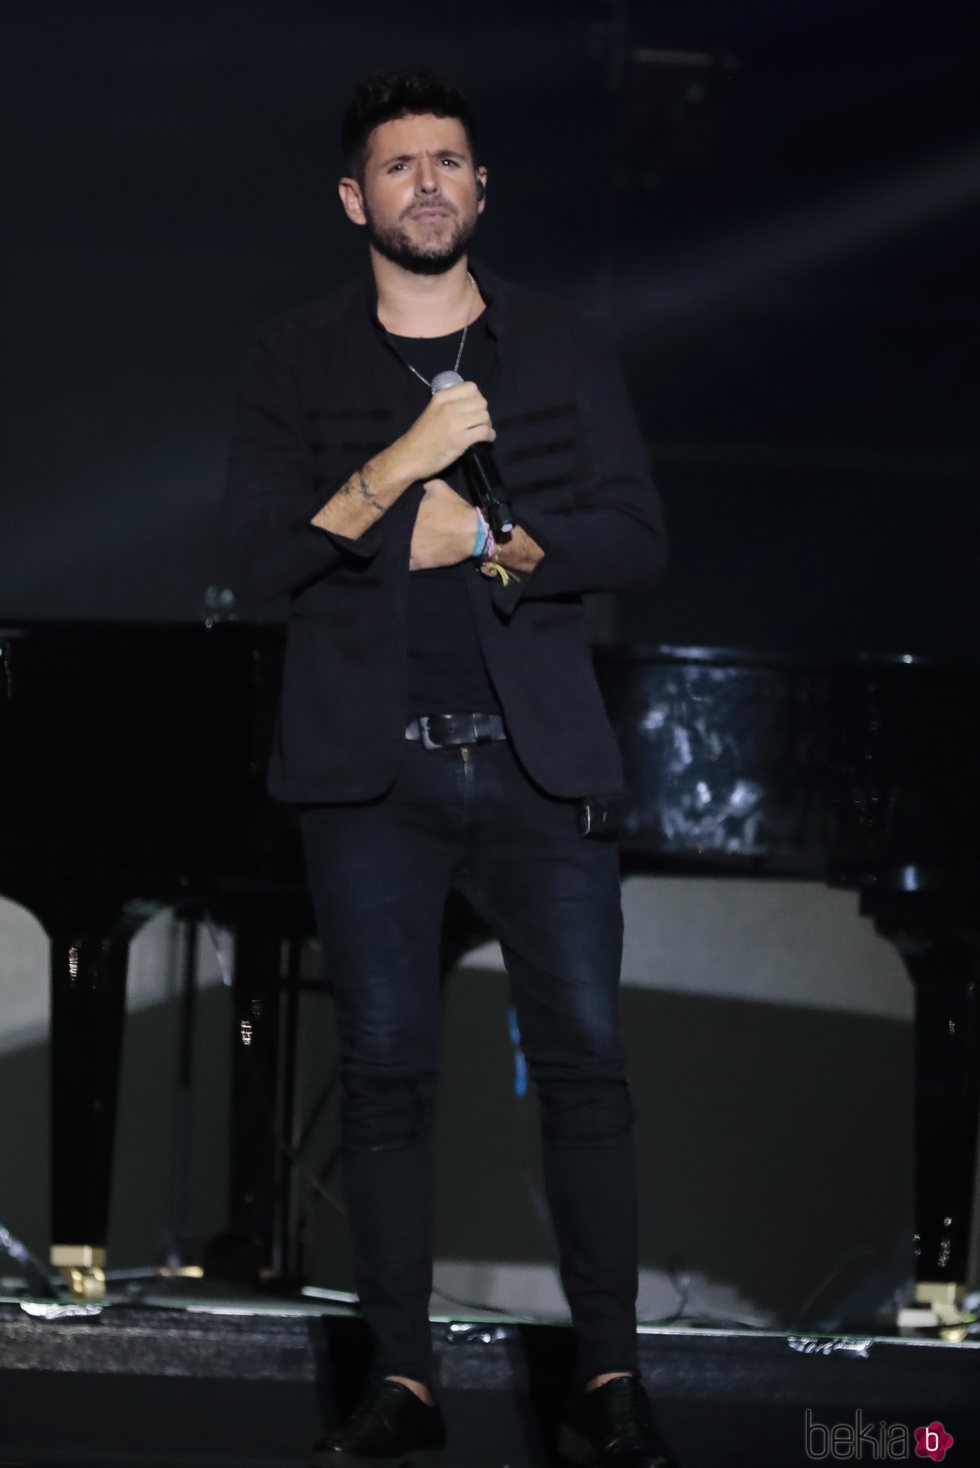 Pablo López en el concierto 'Vive Dial' 2018 en Madrid